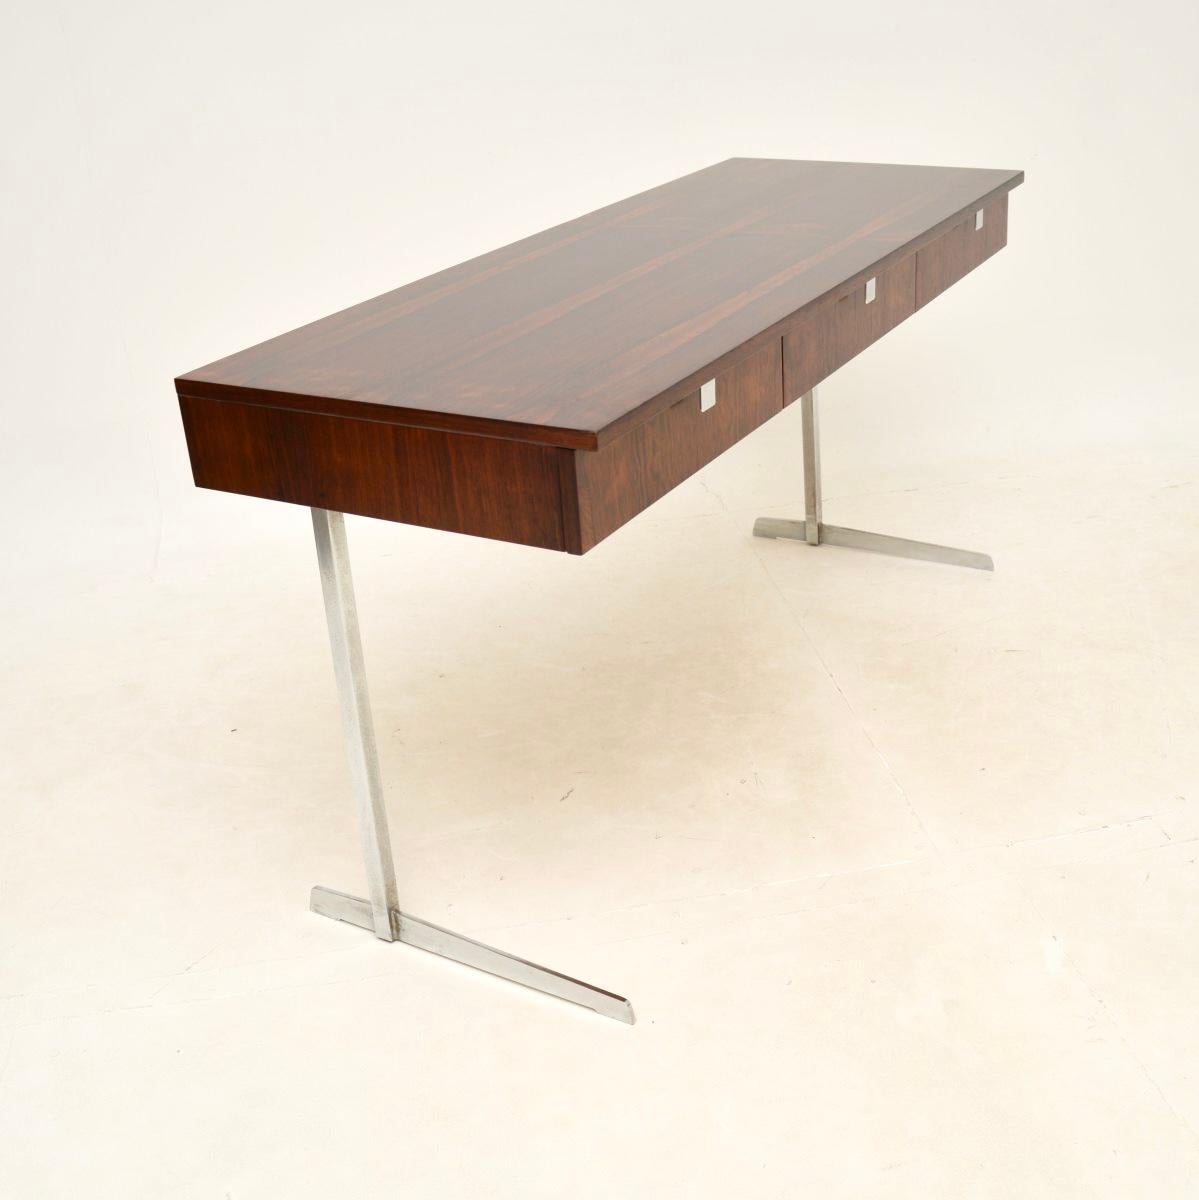 Ein sehr stilvoller und sehr gut verarbeiteter Vintage-Schreibtisch aus Belgien aus den 1960-70er Jahren.

Die Qualität ist hervorragend, das Design wunderschön, die Beine aus verchromtem Stahl sind freitragend. Auch die Schubladen sind mit schönen